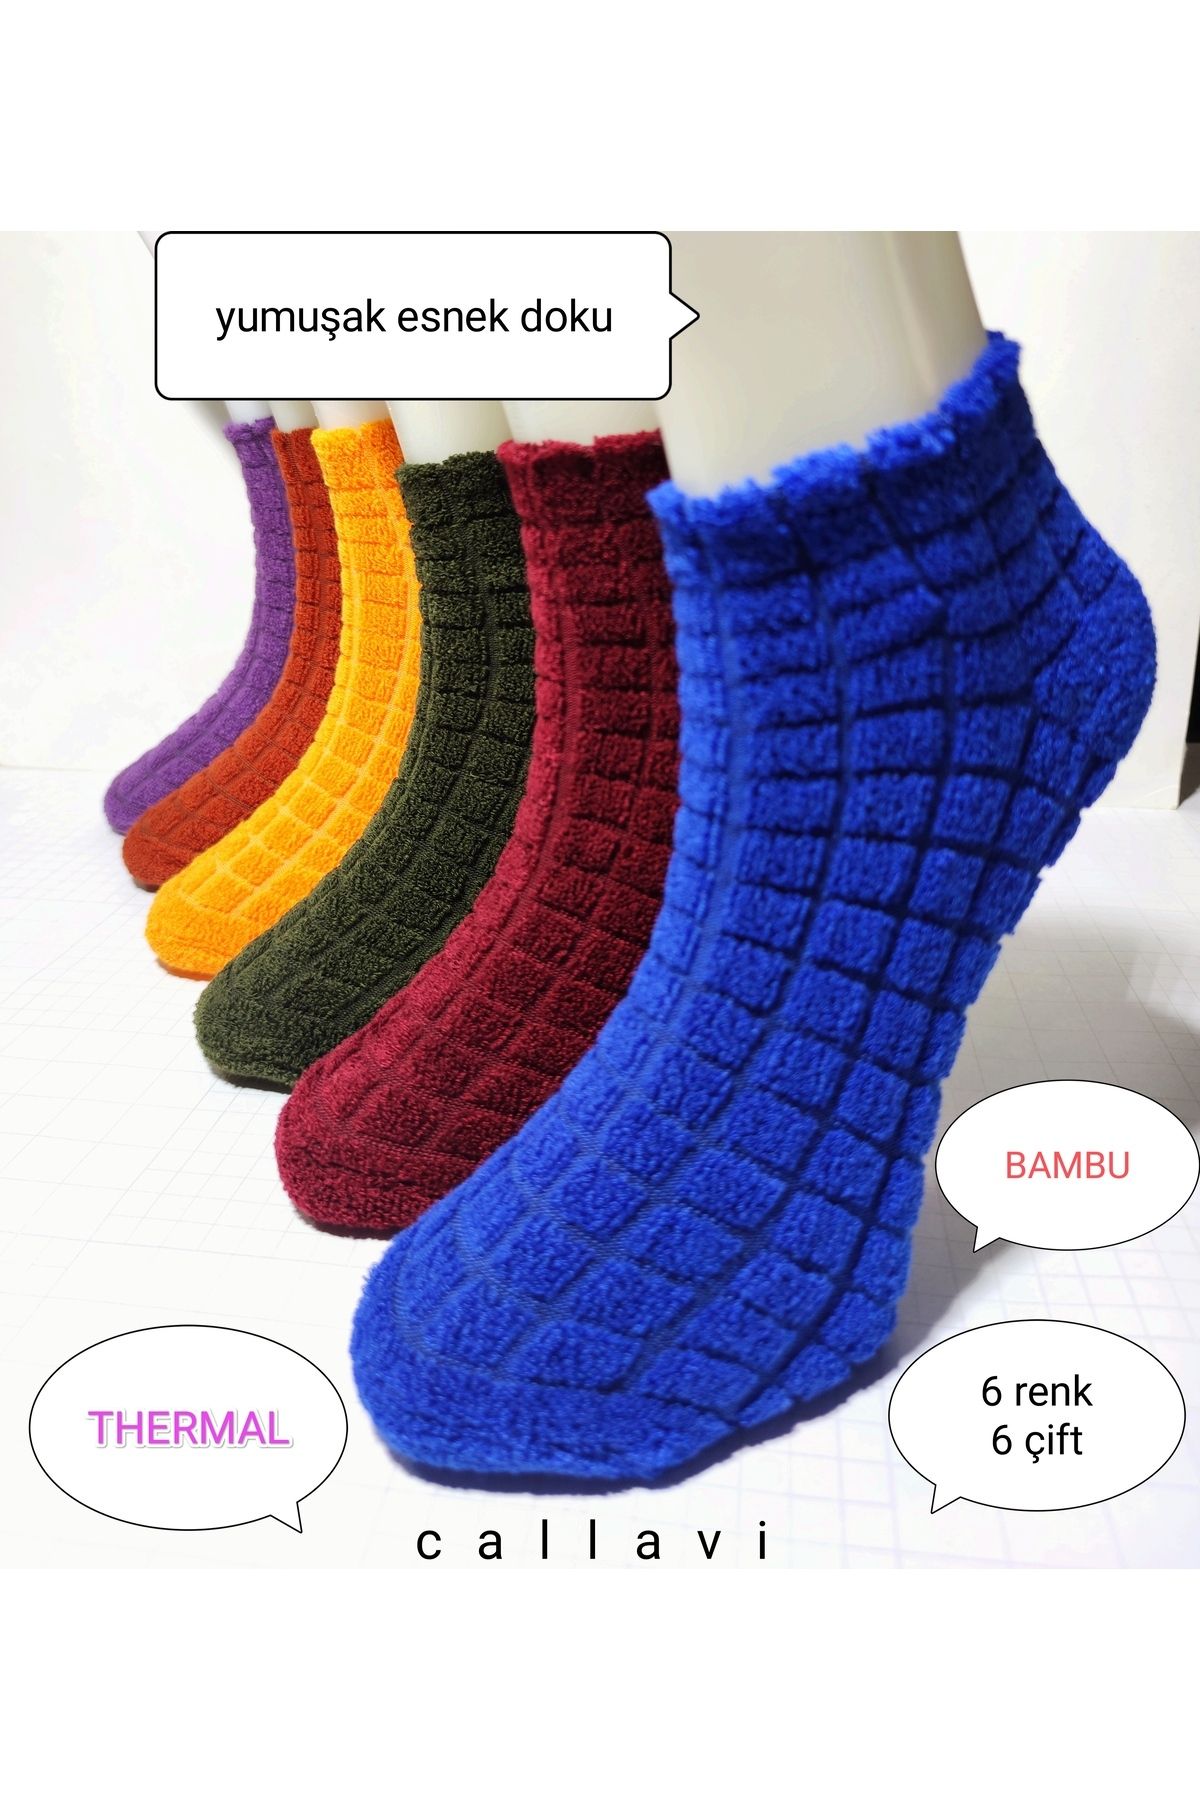 CALLAVI Kışlık Bambu Termal Patik Çorap 6 Çift